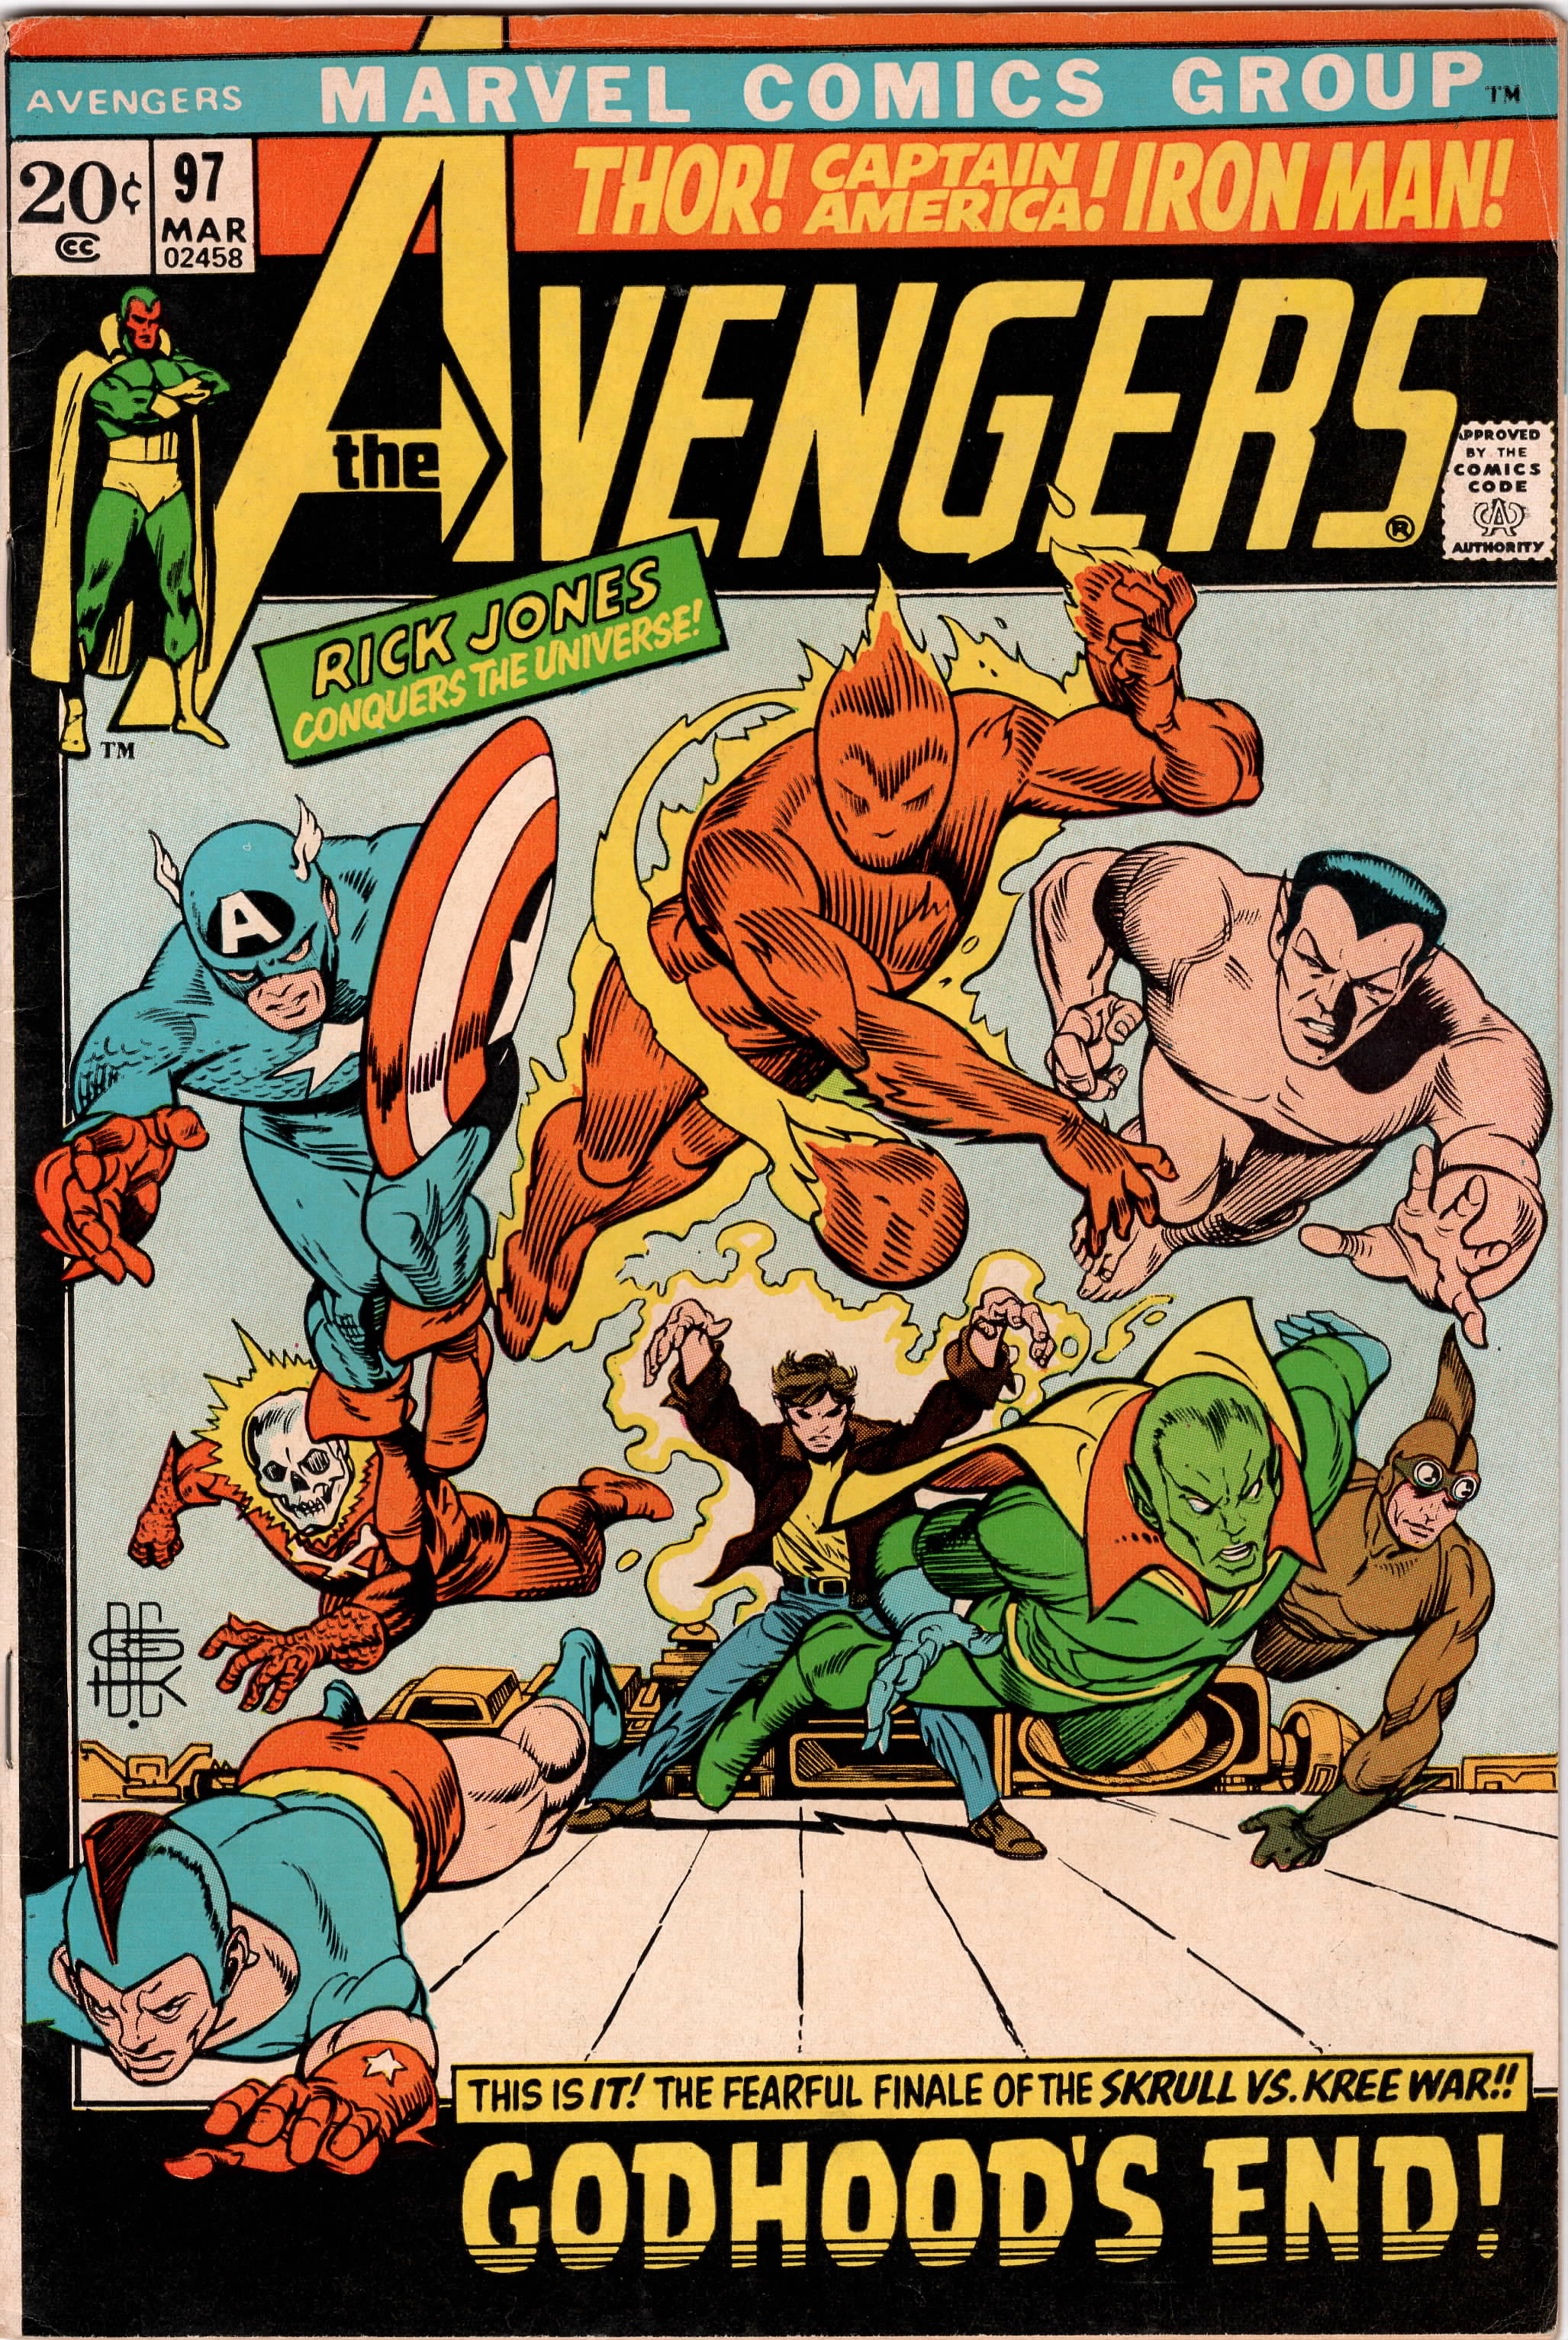 Avengers #097